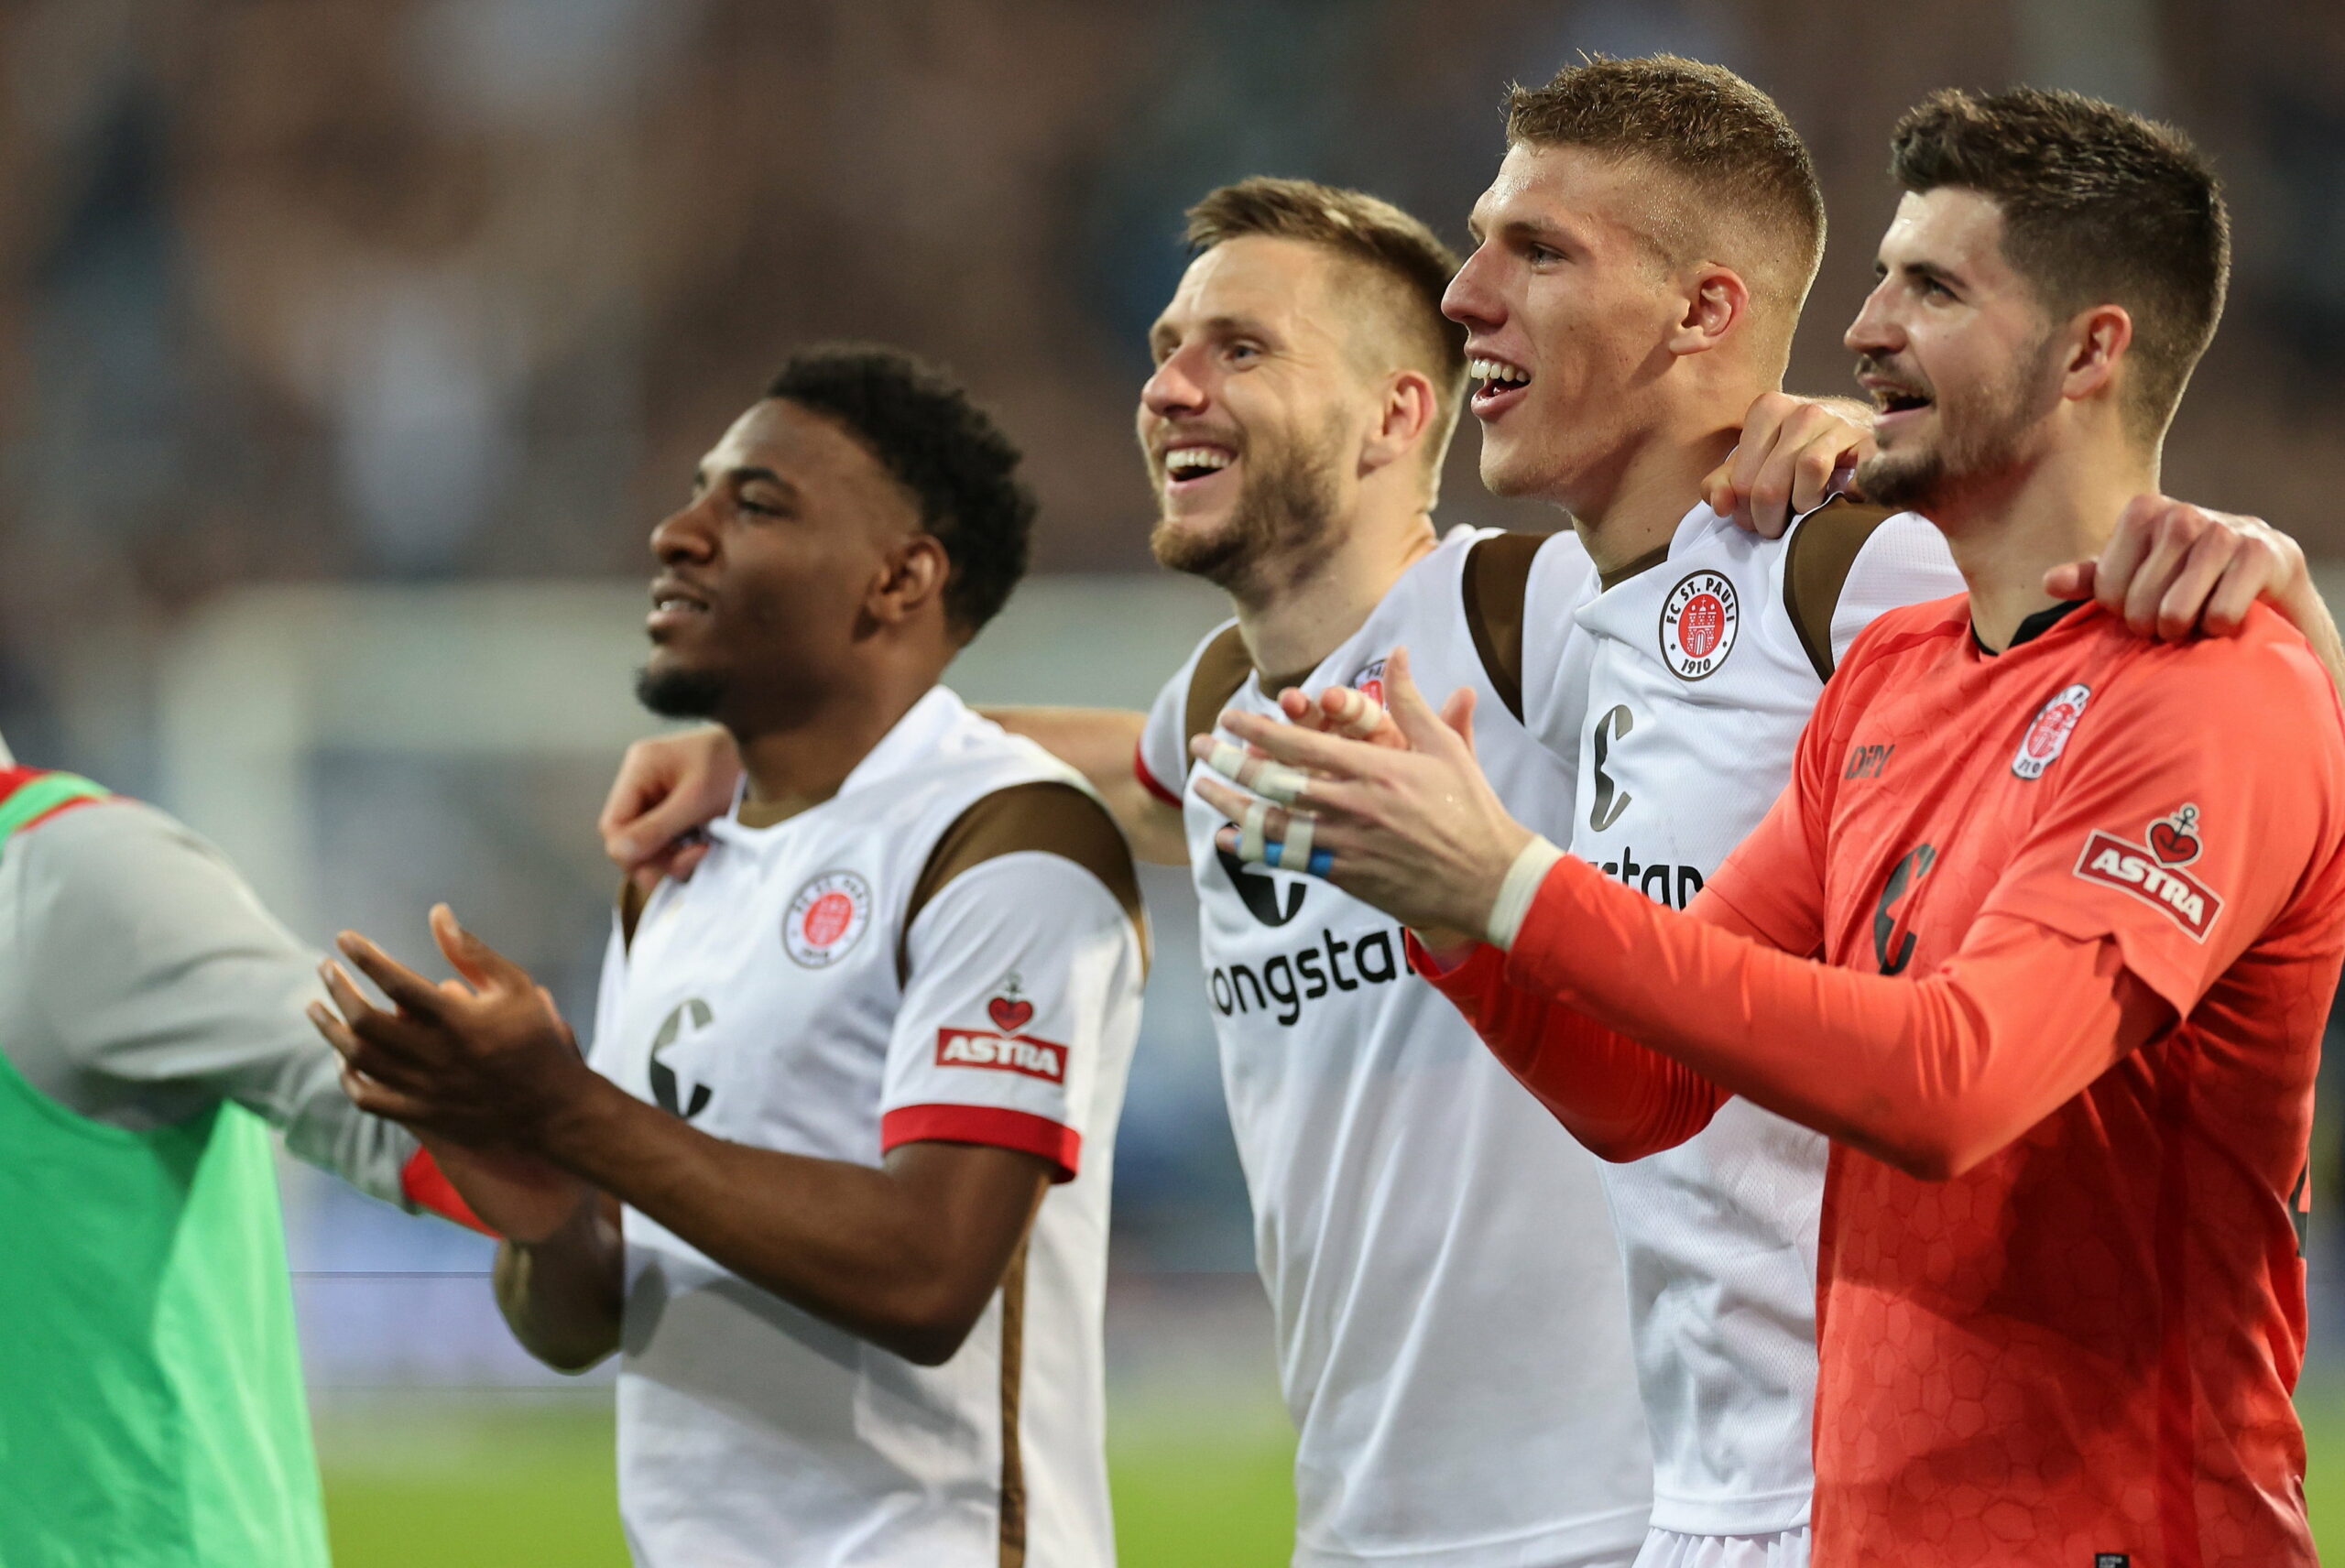 Afolayan, Mets, Medic und Vasilj feiern den Sieg in Darmstadt